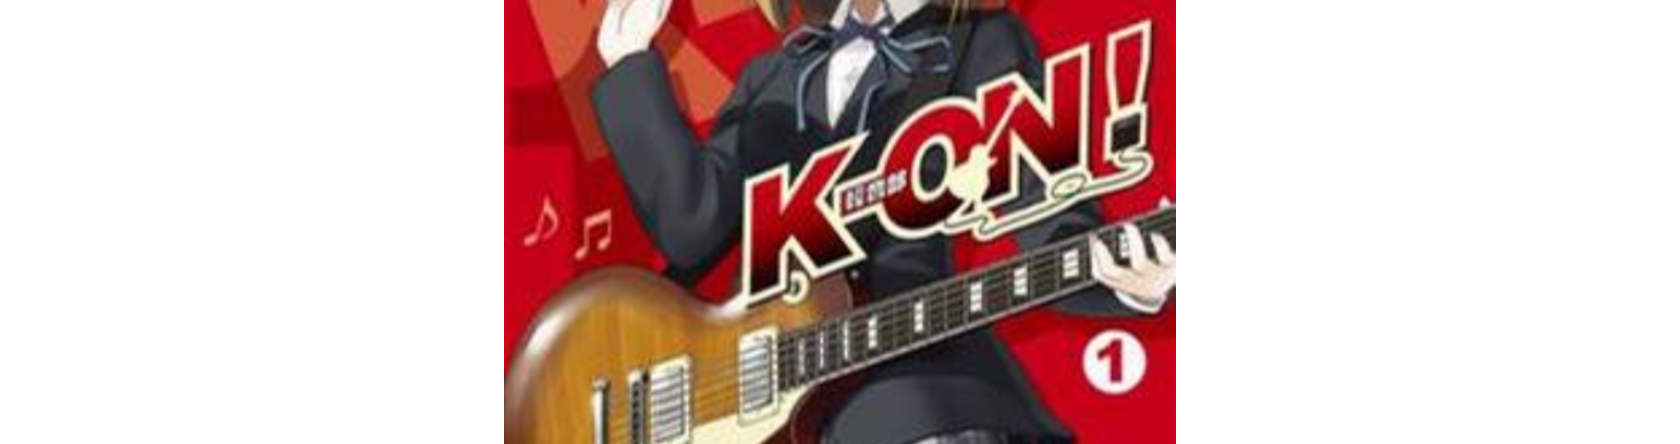 K-On!輕音部 Vol.1